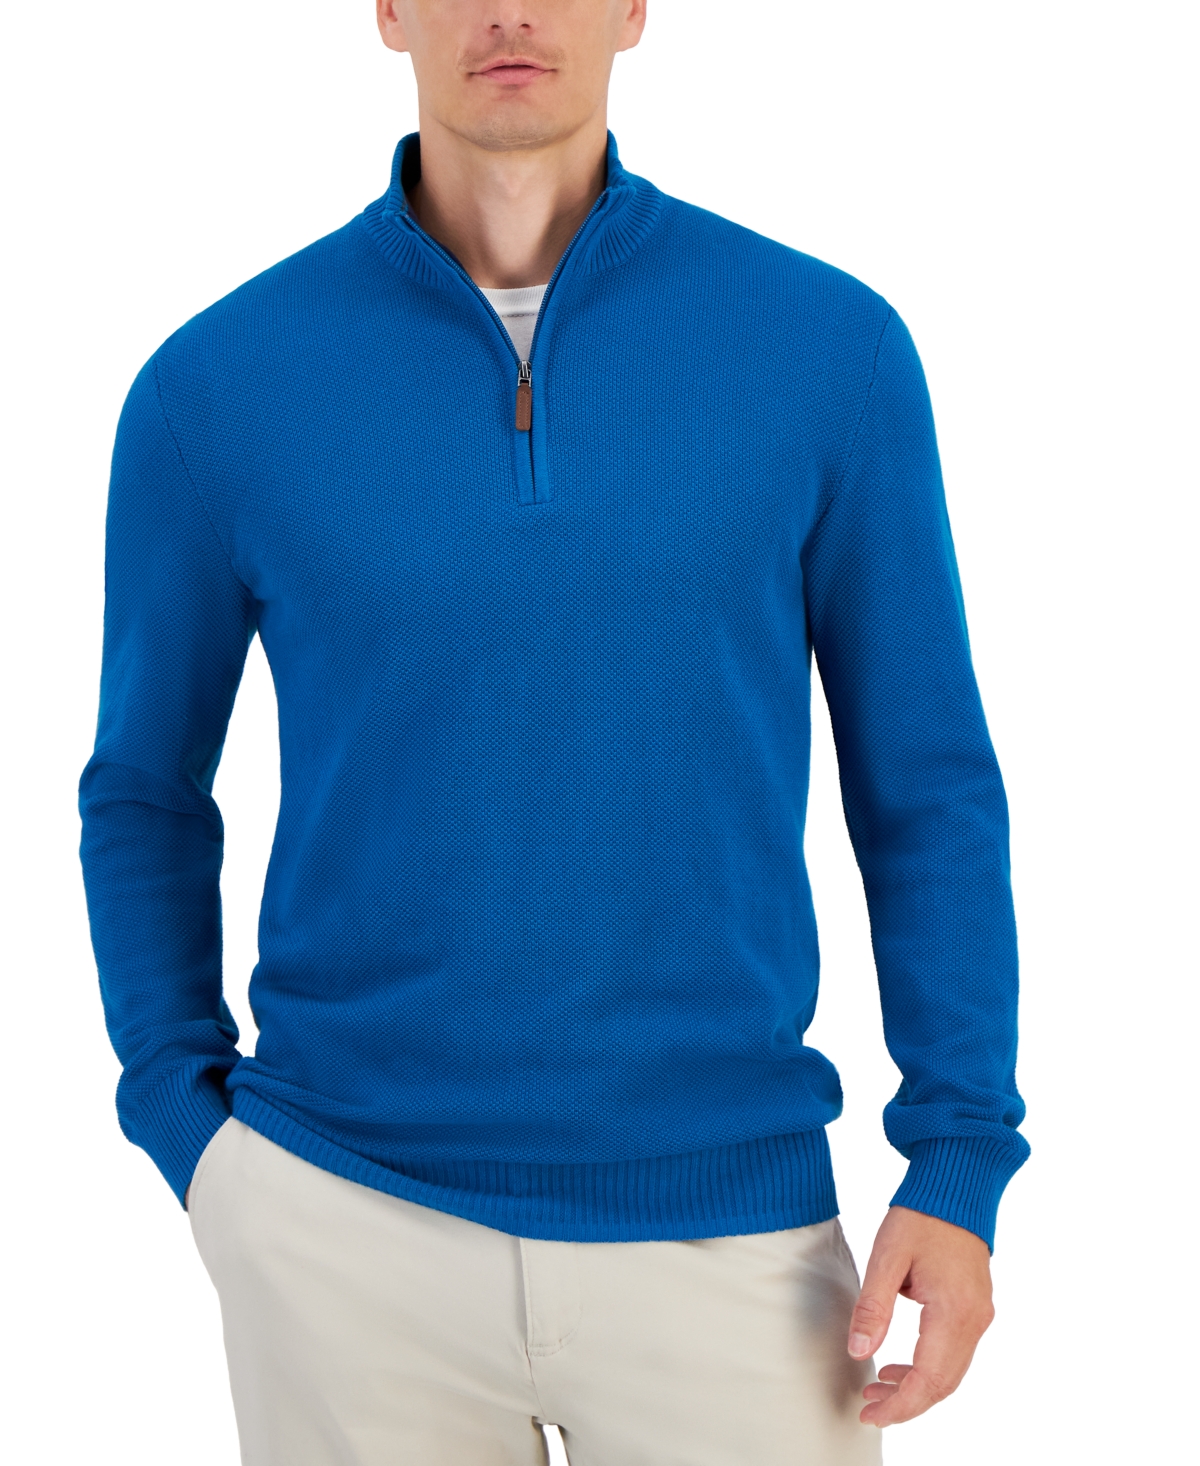 Men's Quarter-Zip Textured Cotton Sweater, Created for Macy's - Deep Rust